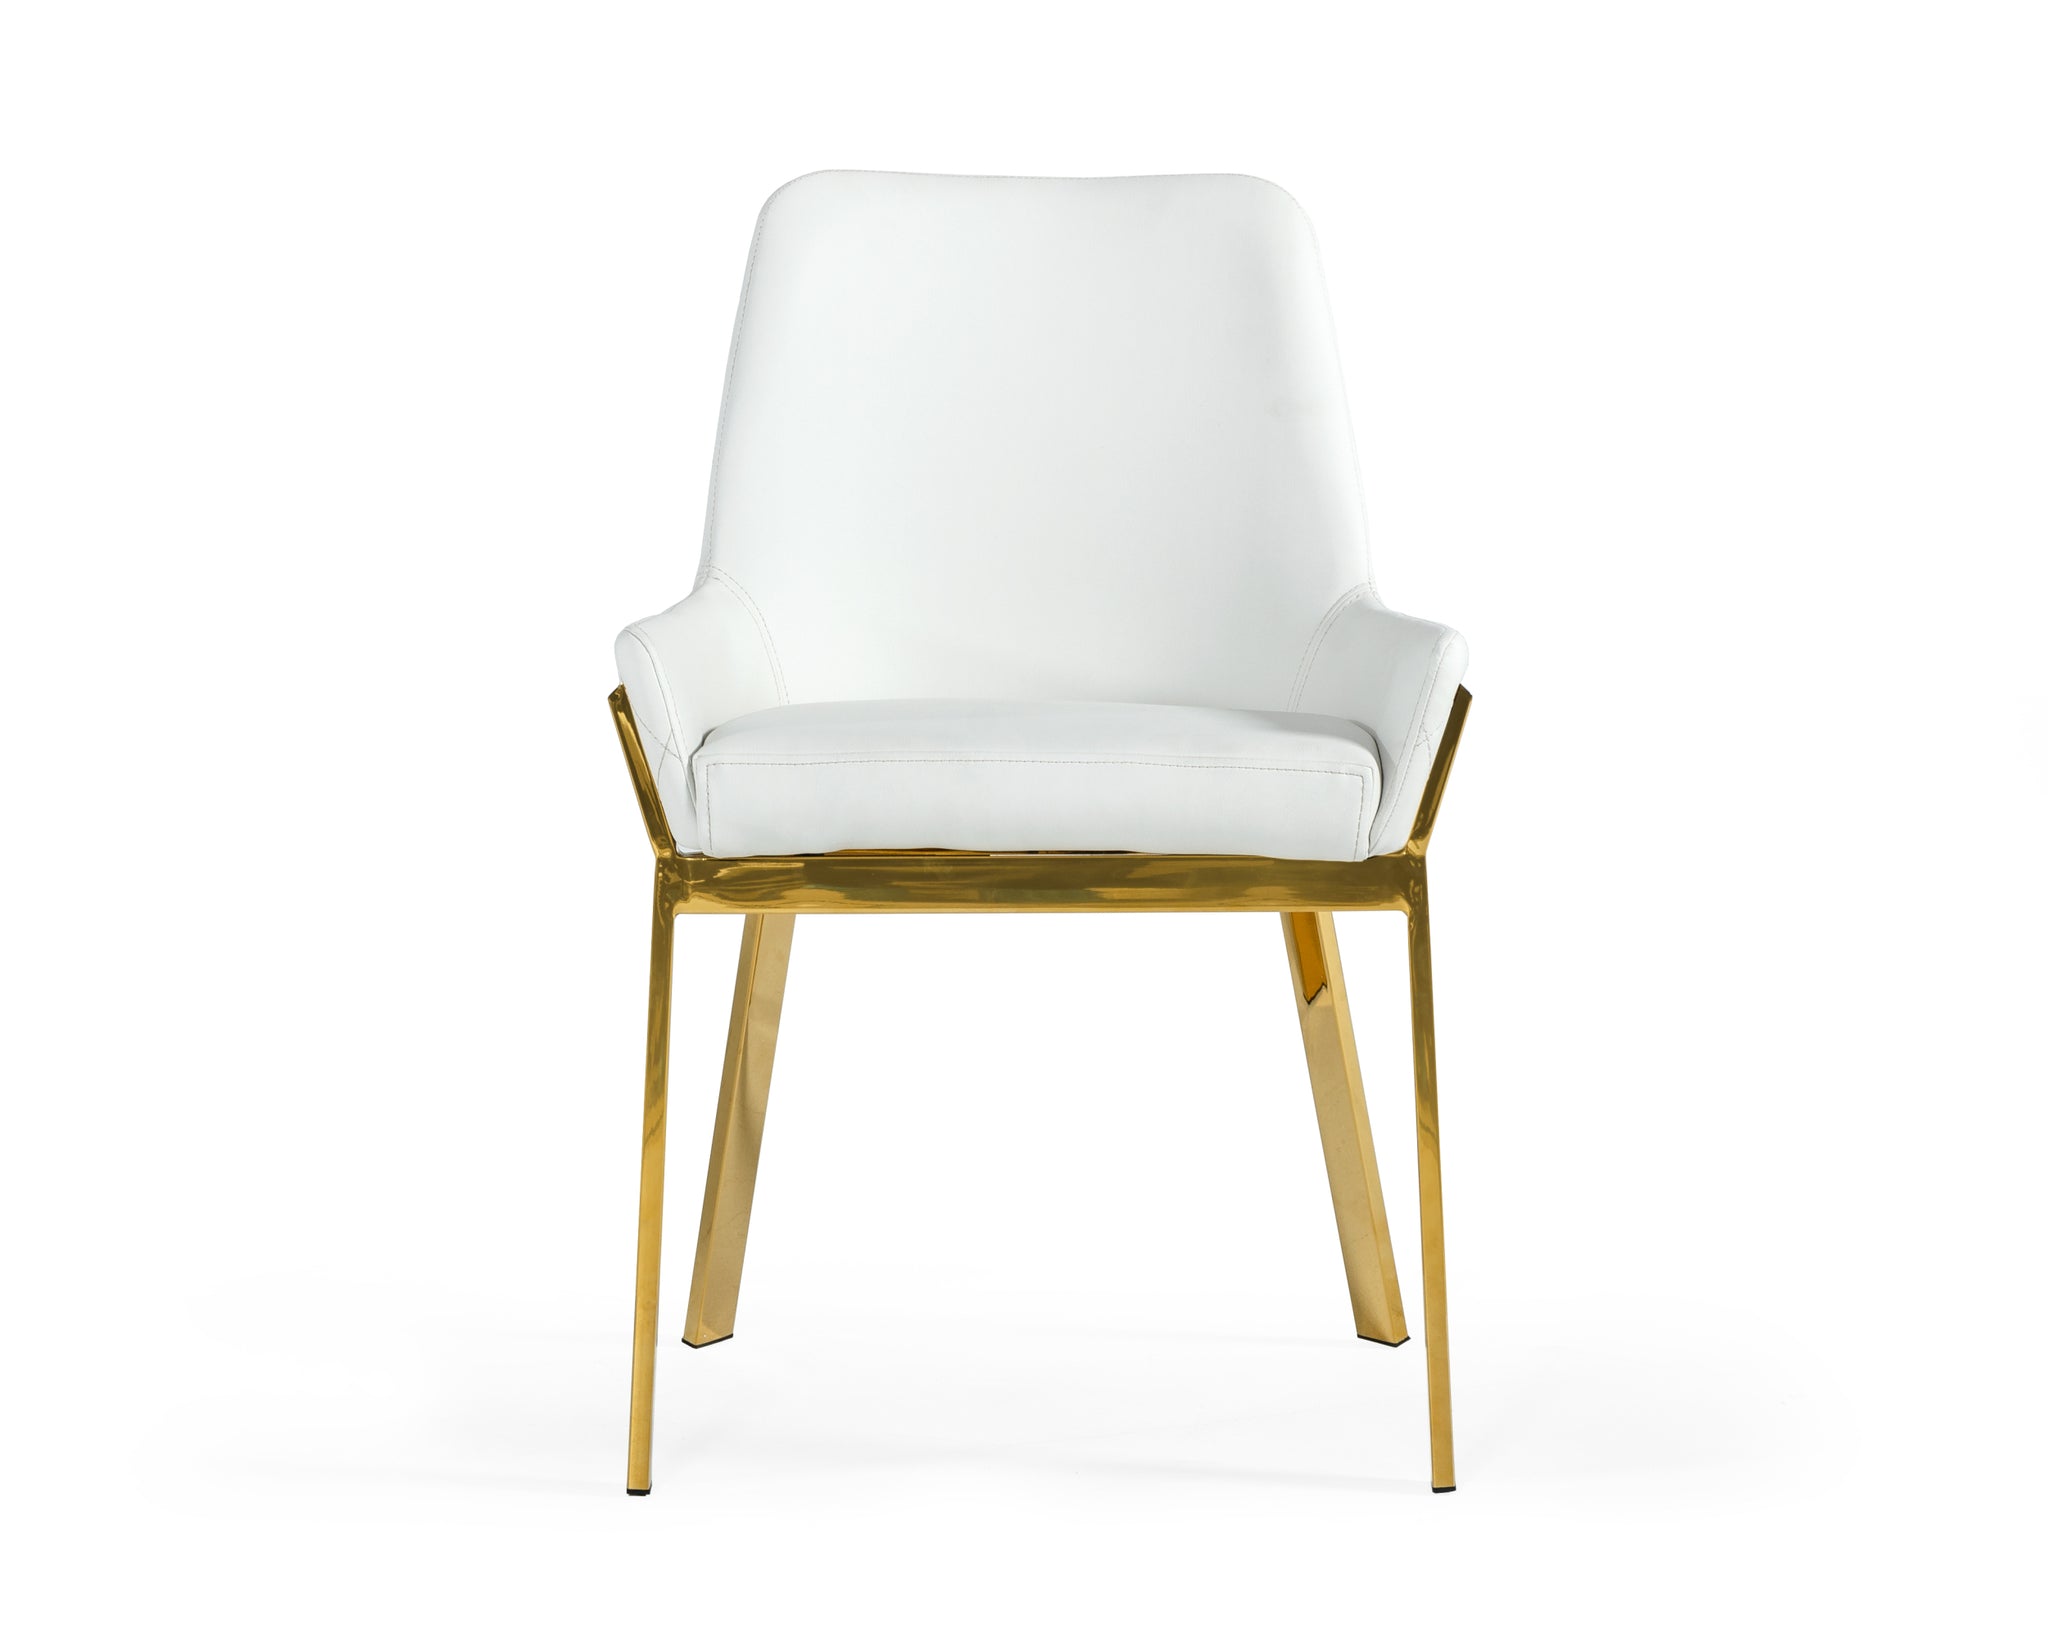 Modrest Ganon Modern White & Gold Dining Chair white-bonded leather